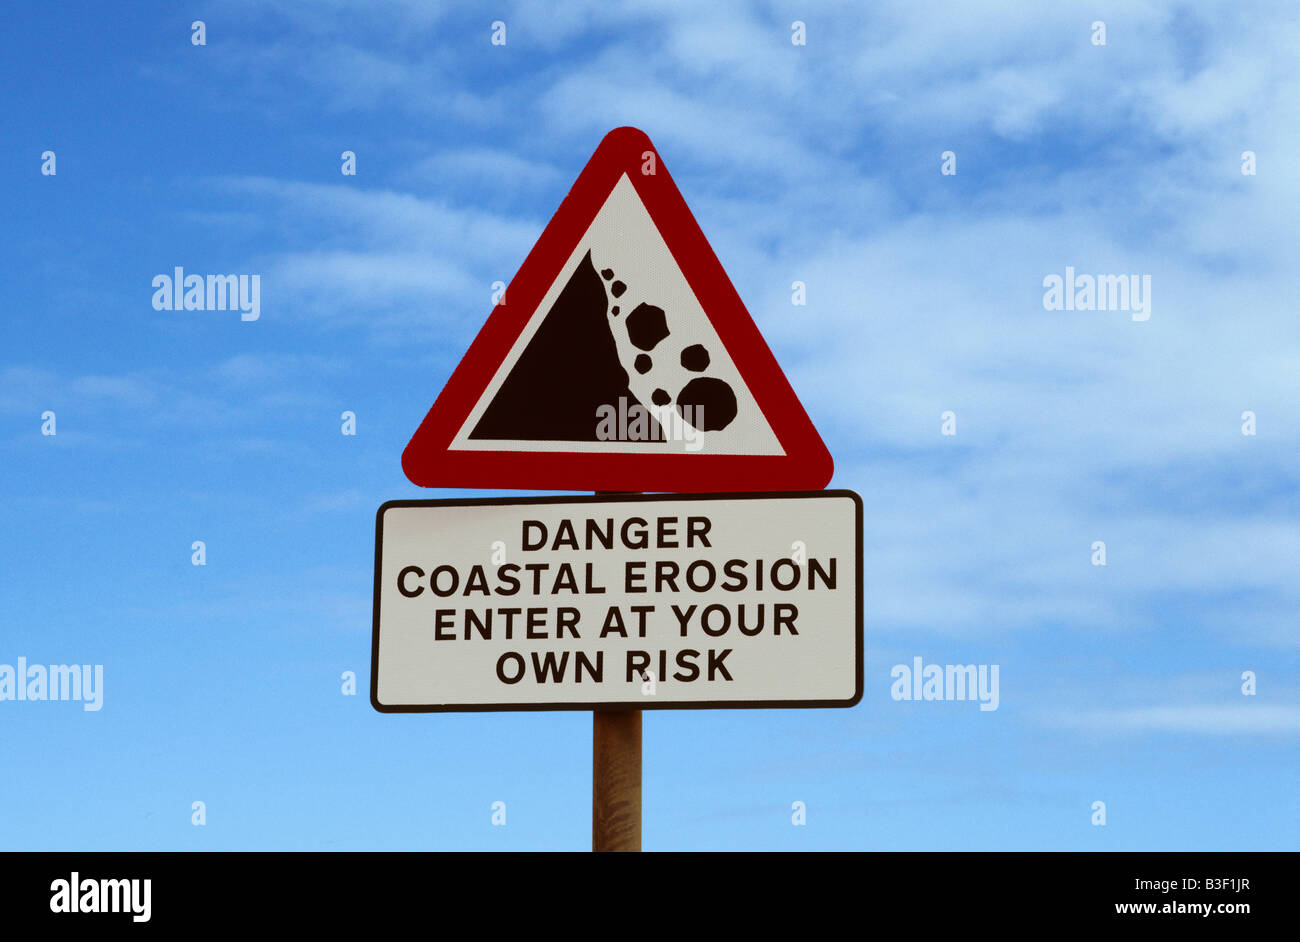 danger warning sign of coastal erosion near Ulrome East coast of Yorkshire UK Stock Photo